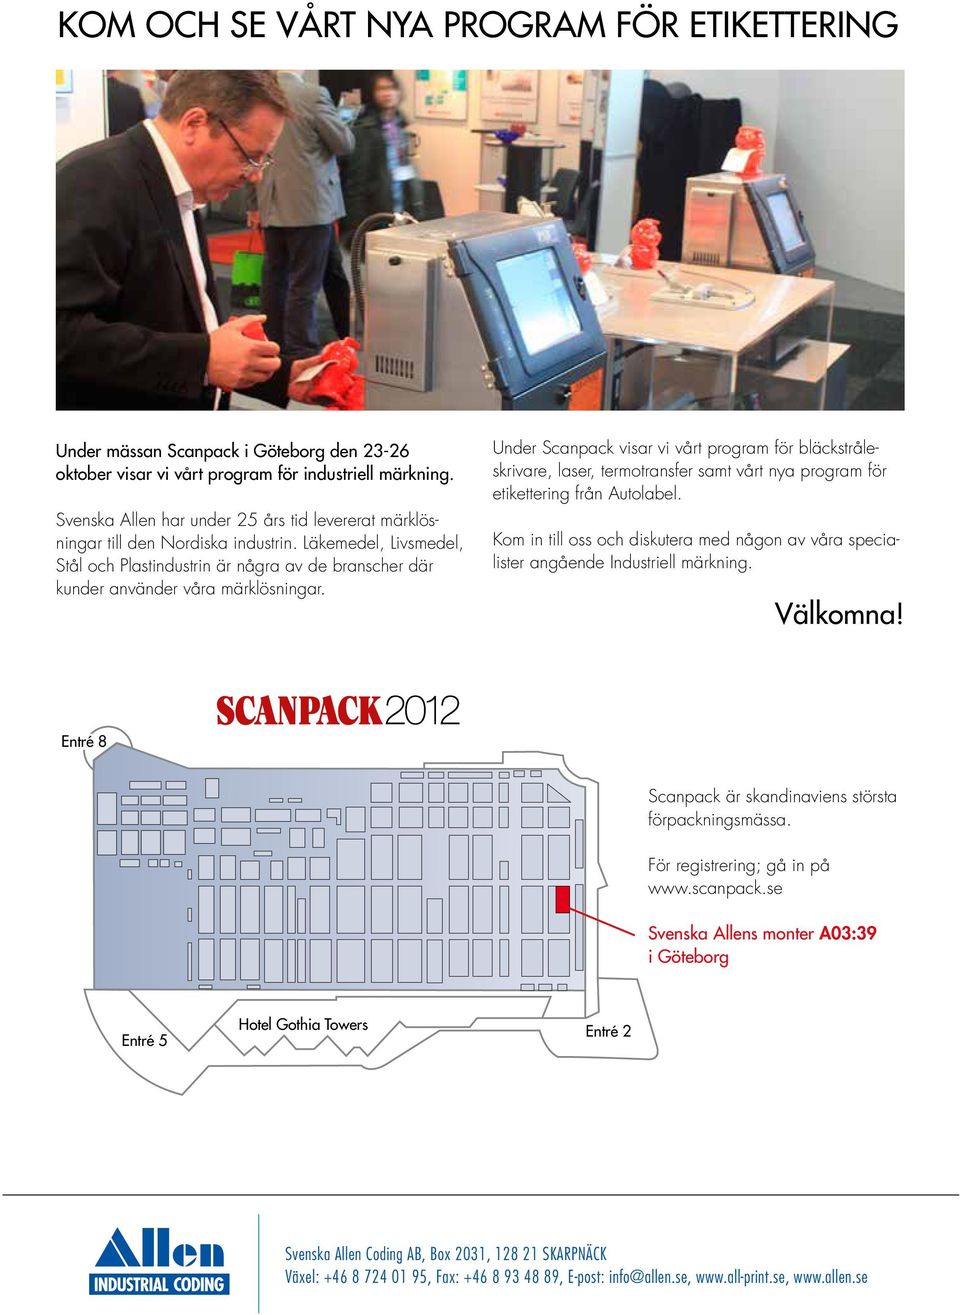 Under Scanpack visar vi vårt program för bläckstråleskrivare, laser, termotransfer samt vårt nya program för etikettering från Autolabel.